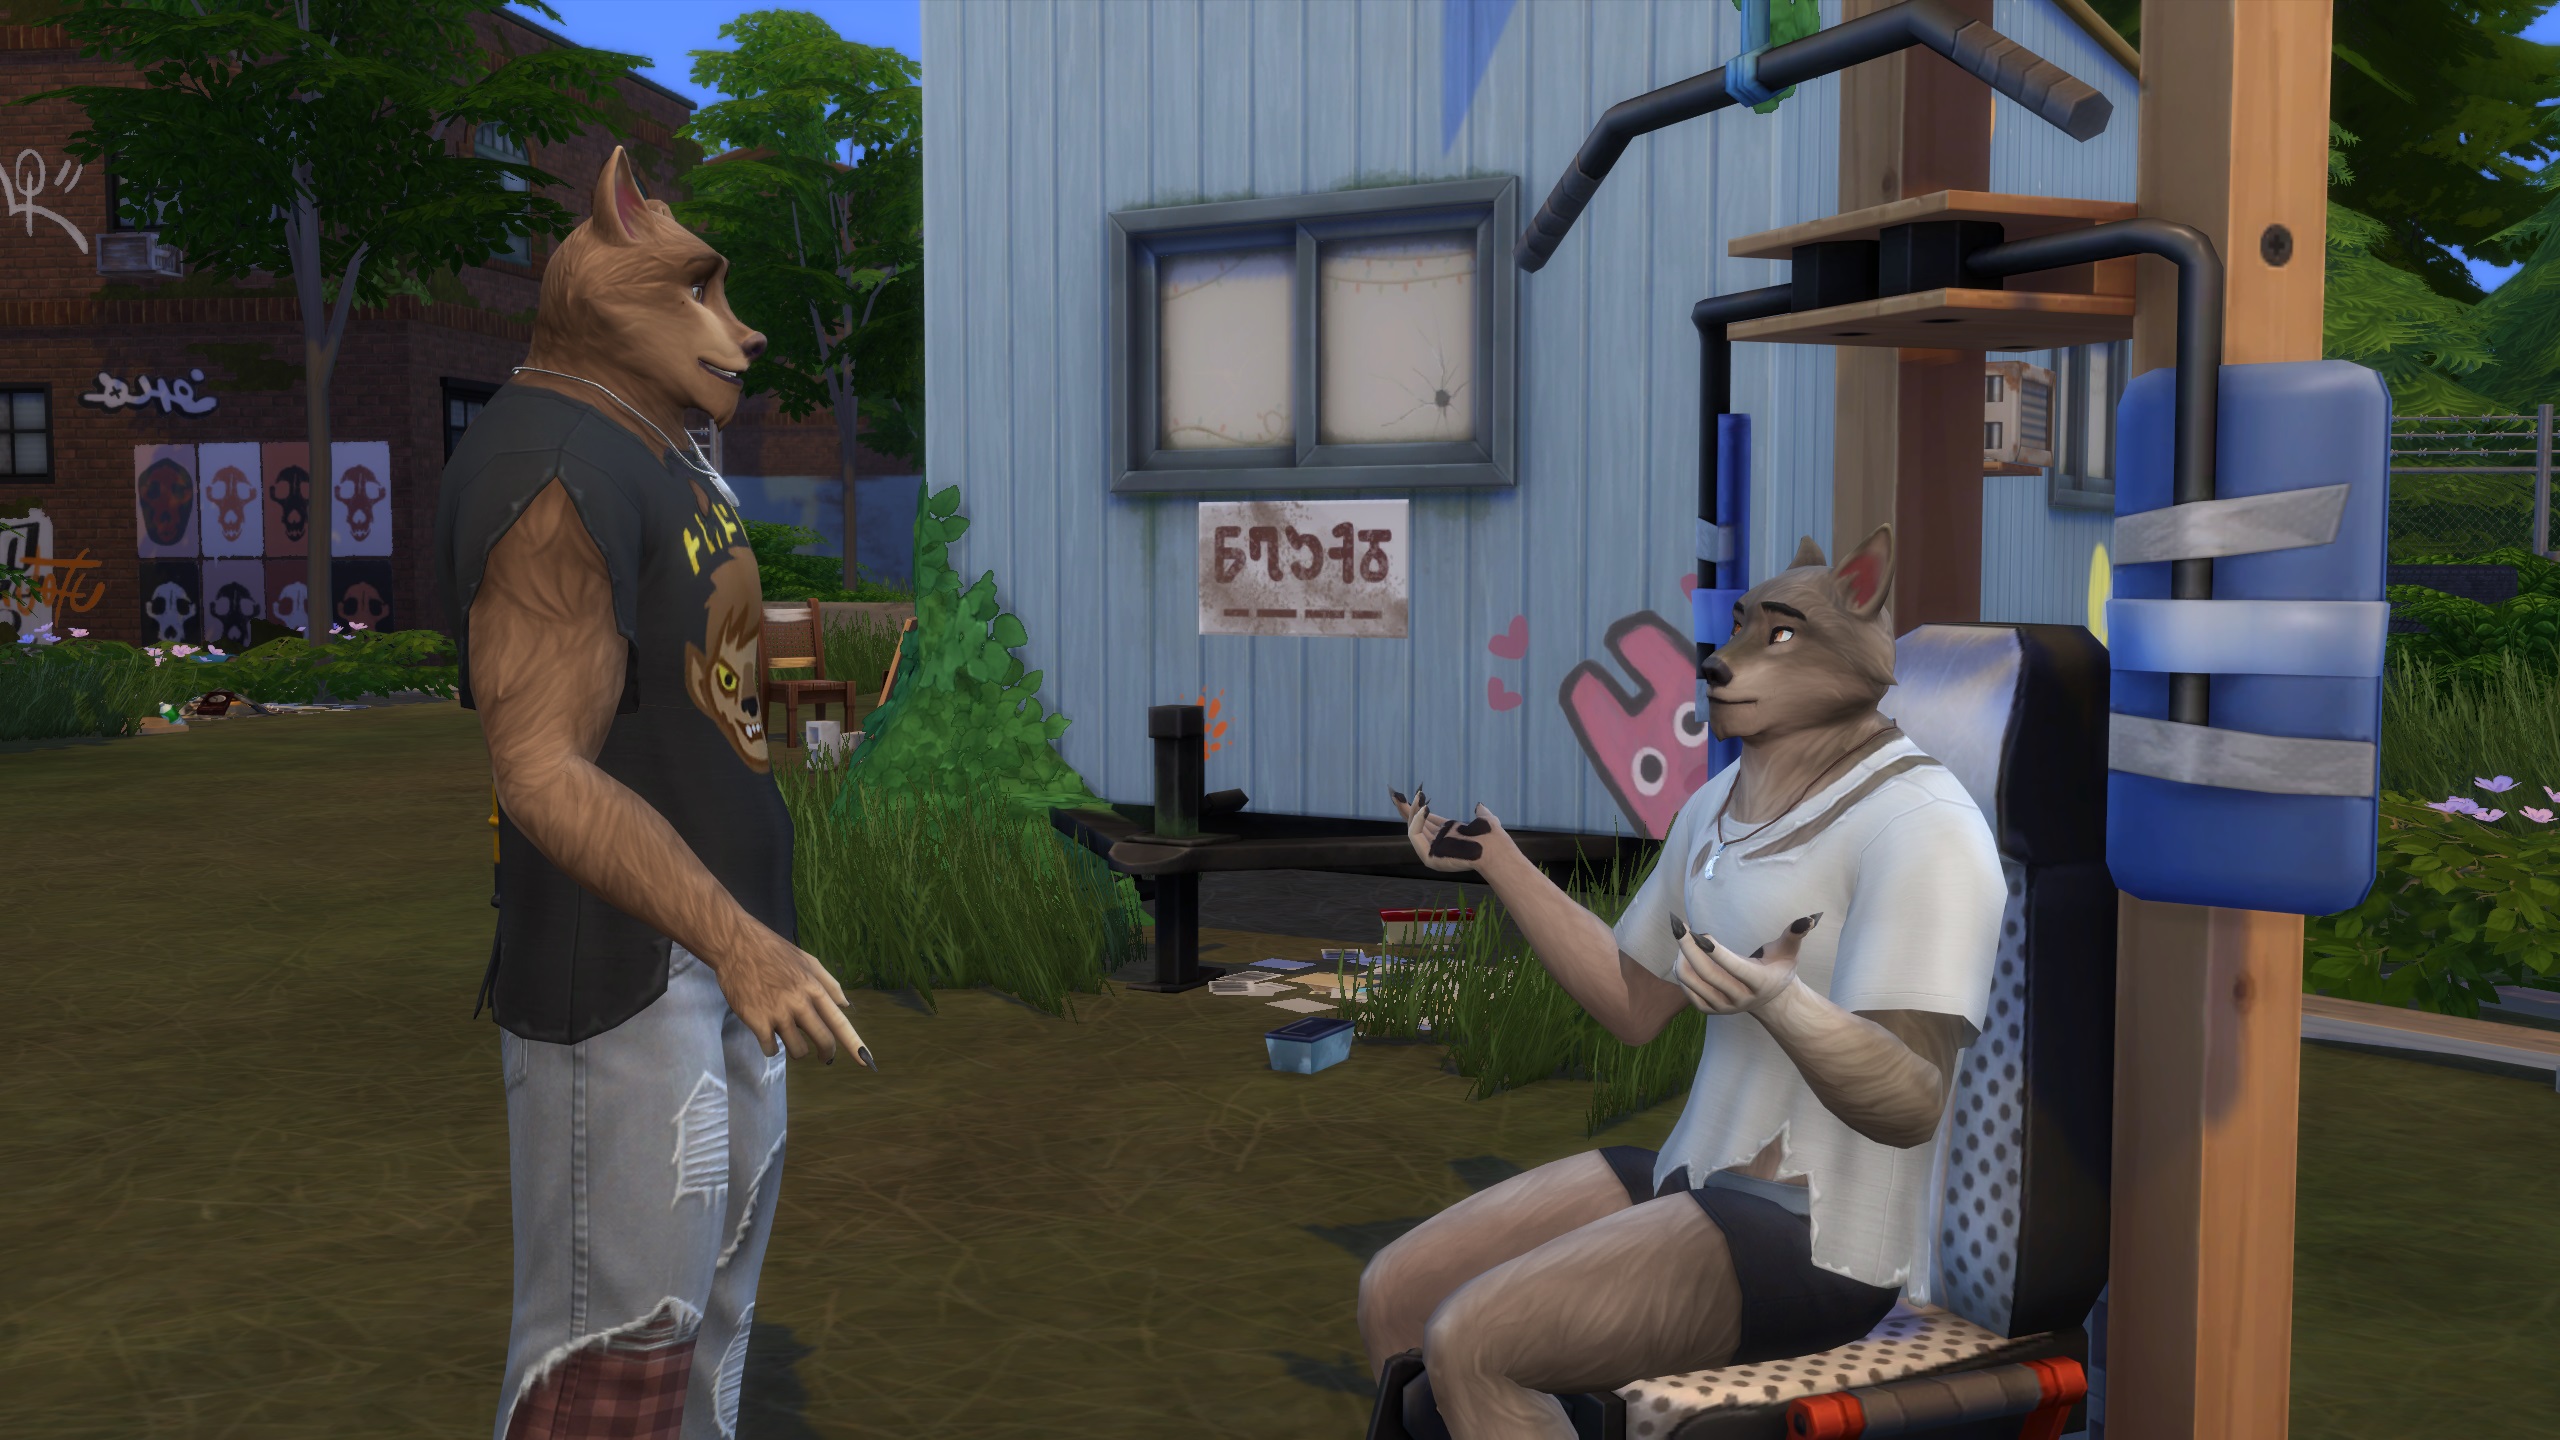 The Sims 4 Lobisomens - Dois Sims lobisomens conversam enquanto um deles está sentado em um banco elevatório do lado de fora do trailer de Wildfangs.